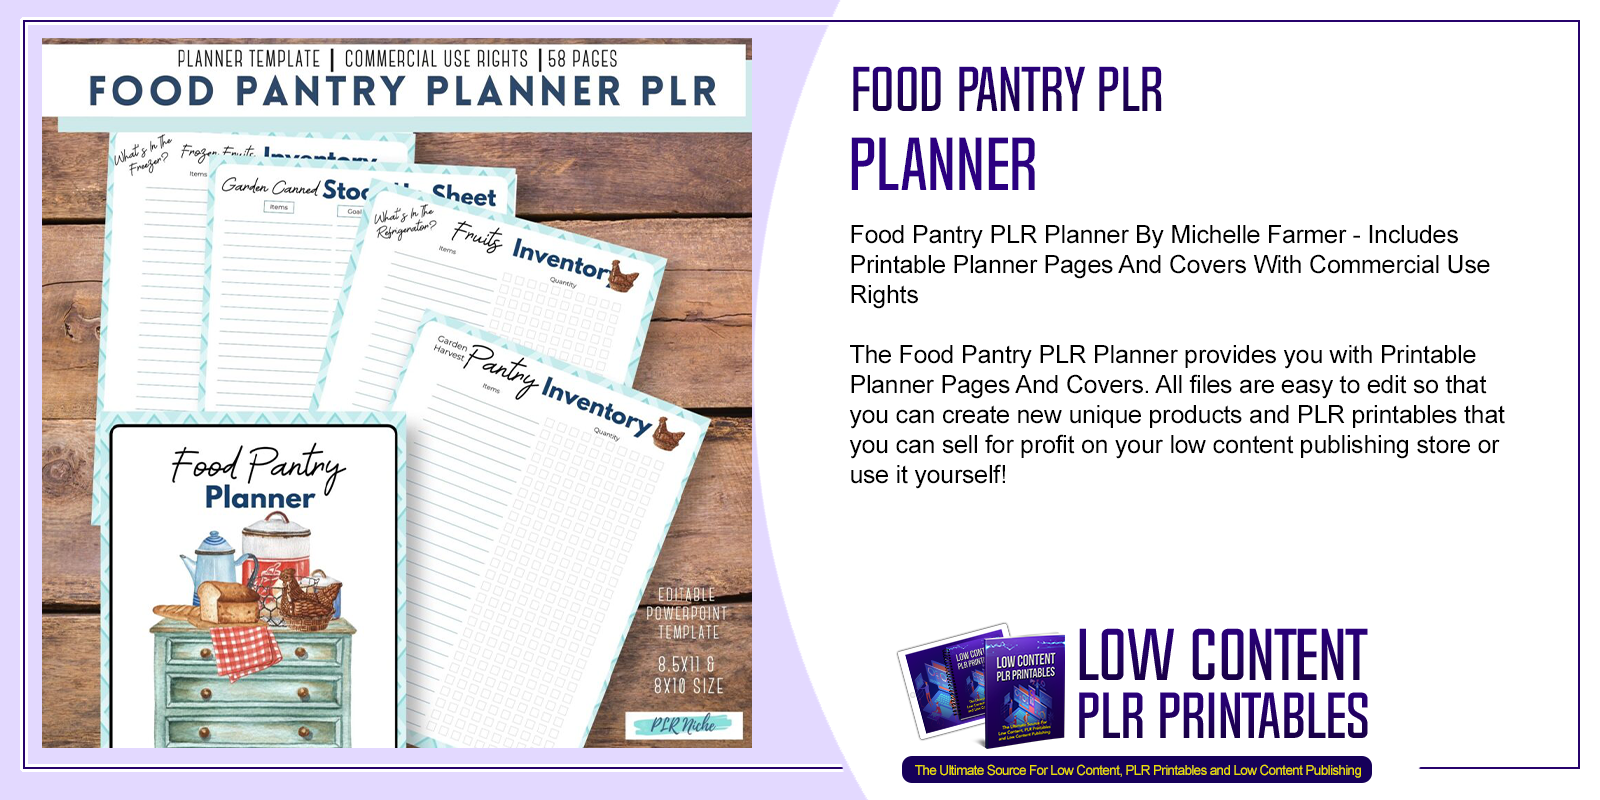 Food Pantry PLR Planner